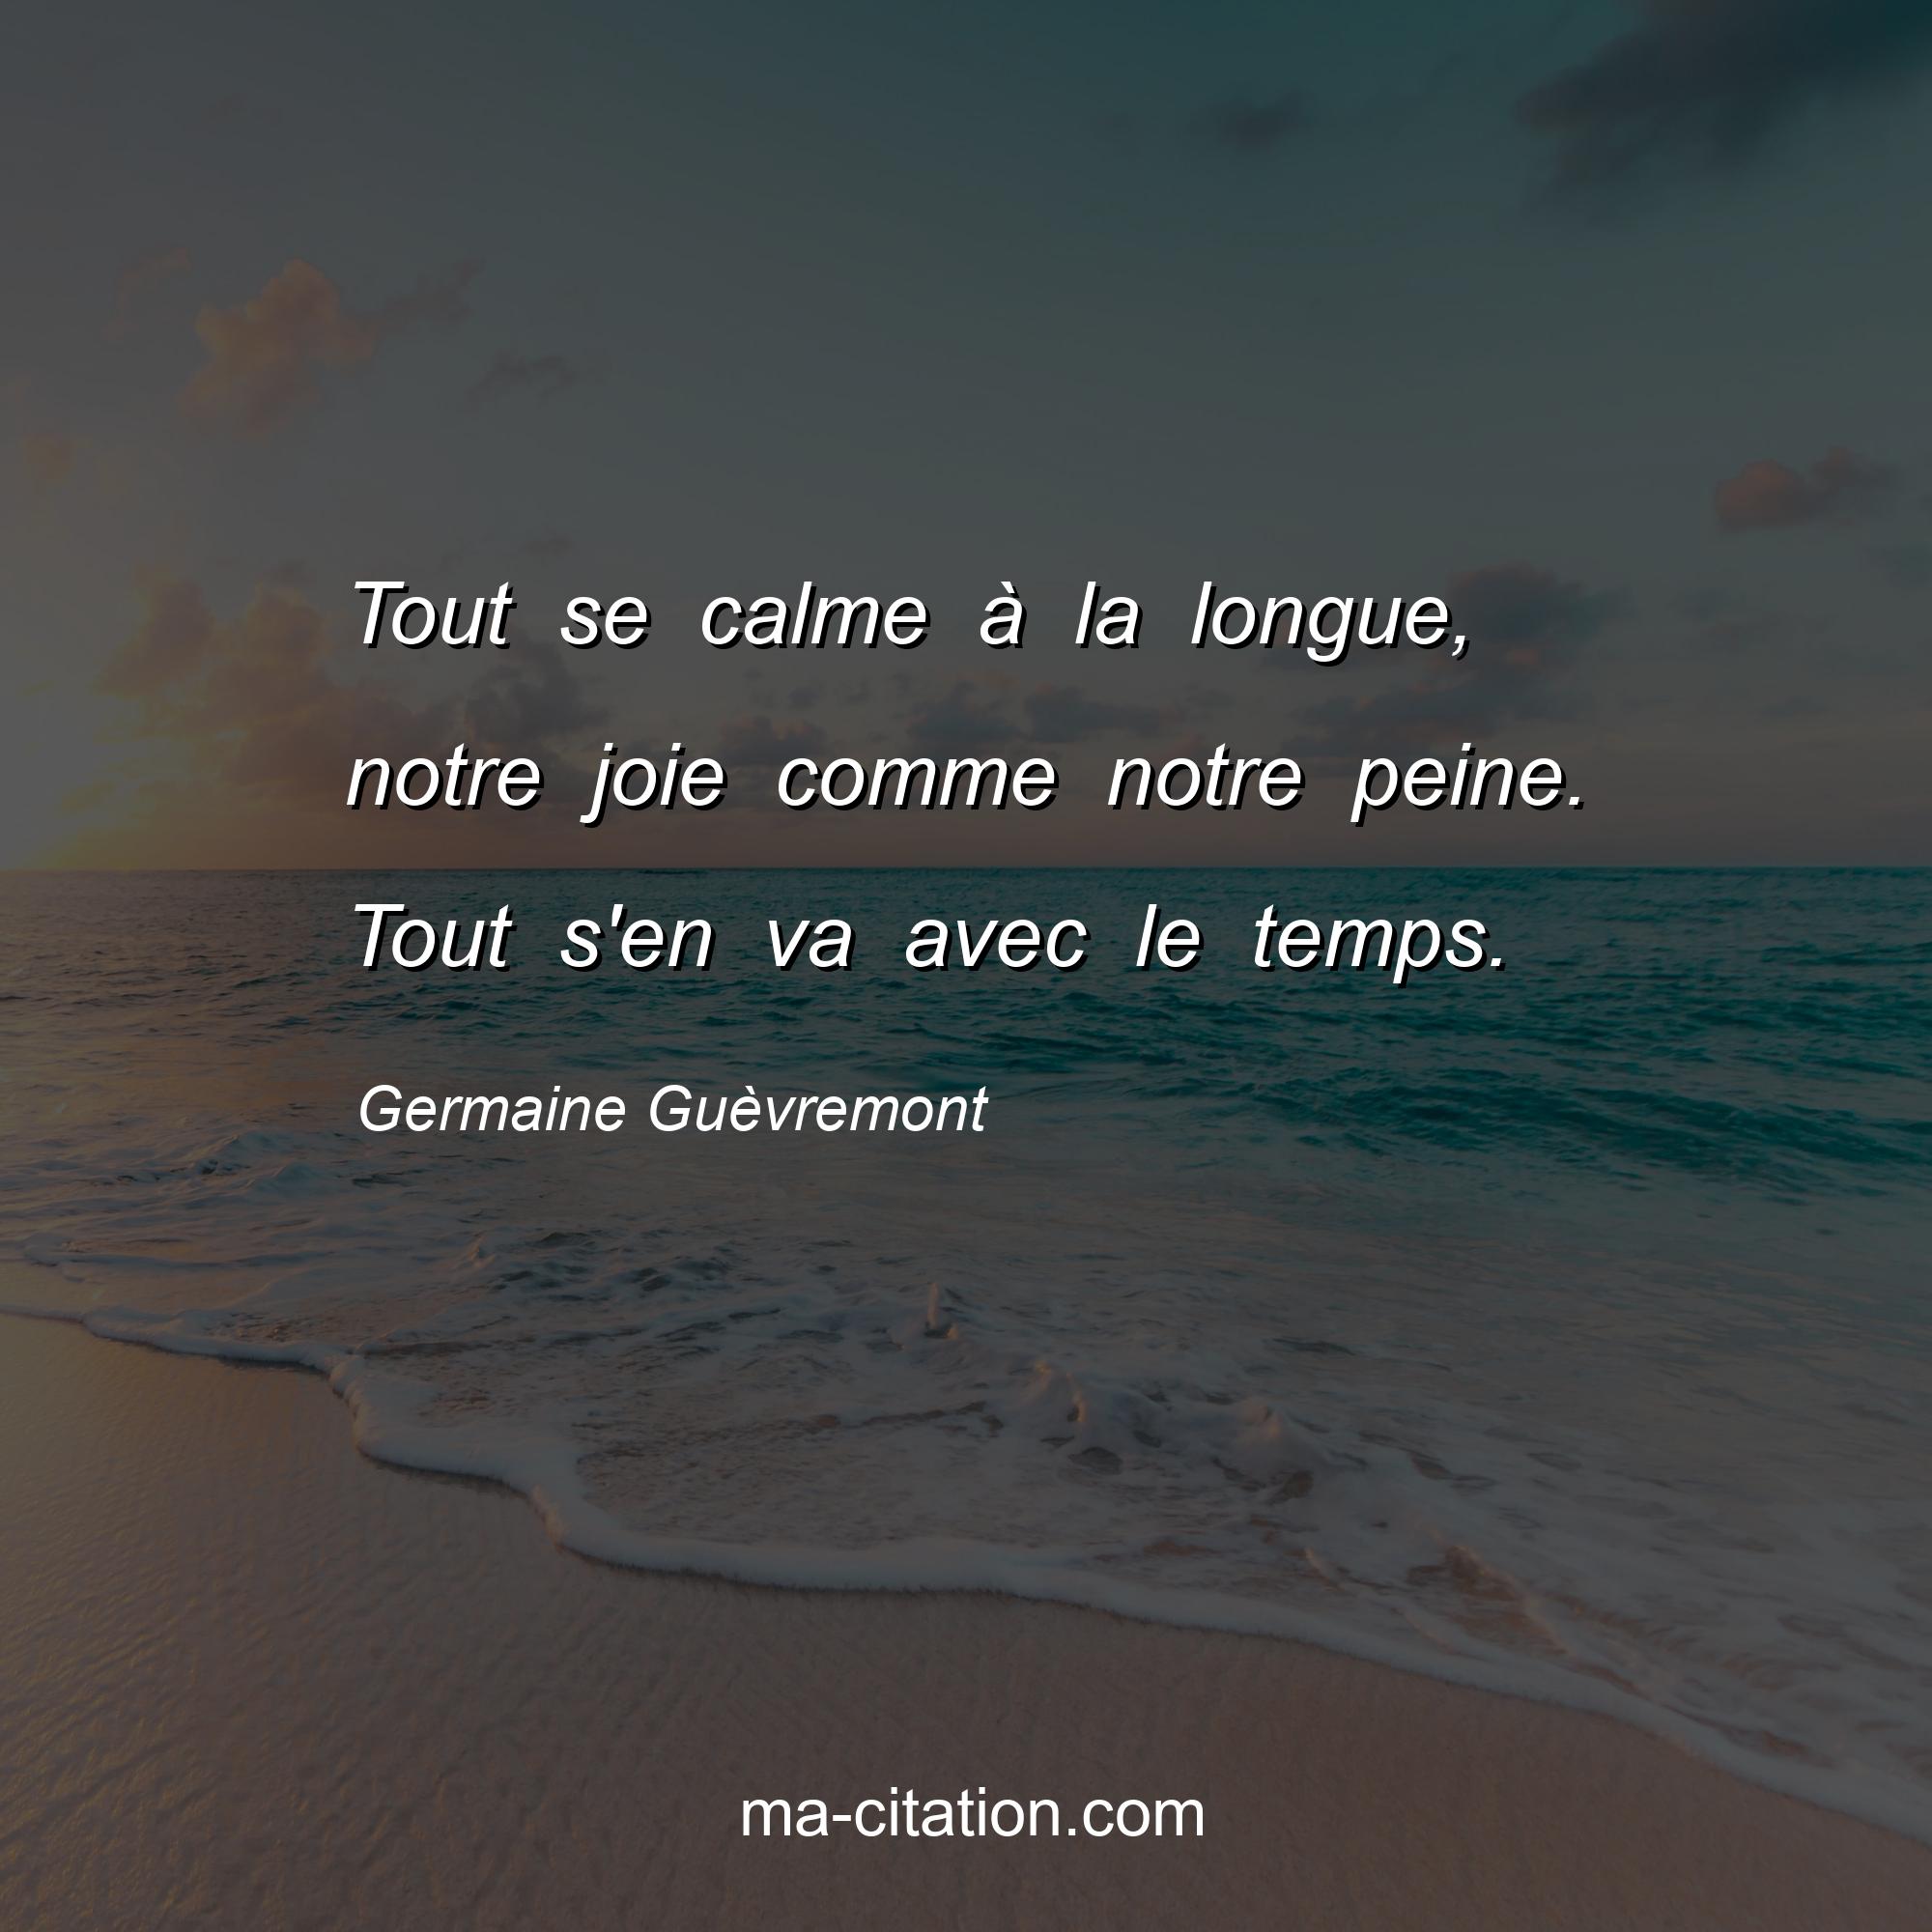 Germaine Guèvremont : Tout se calme à la longue, notre joie comme notre peine. Tout s'en va avec le temps.